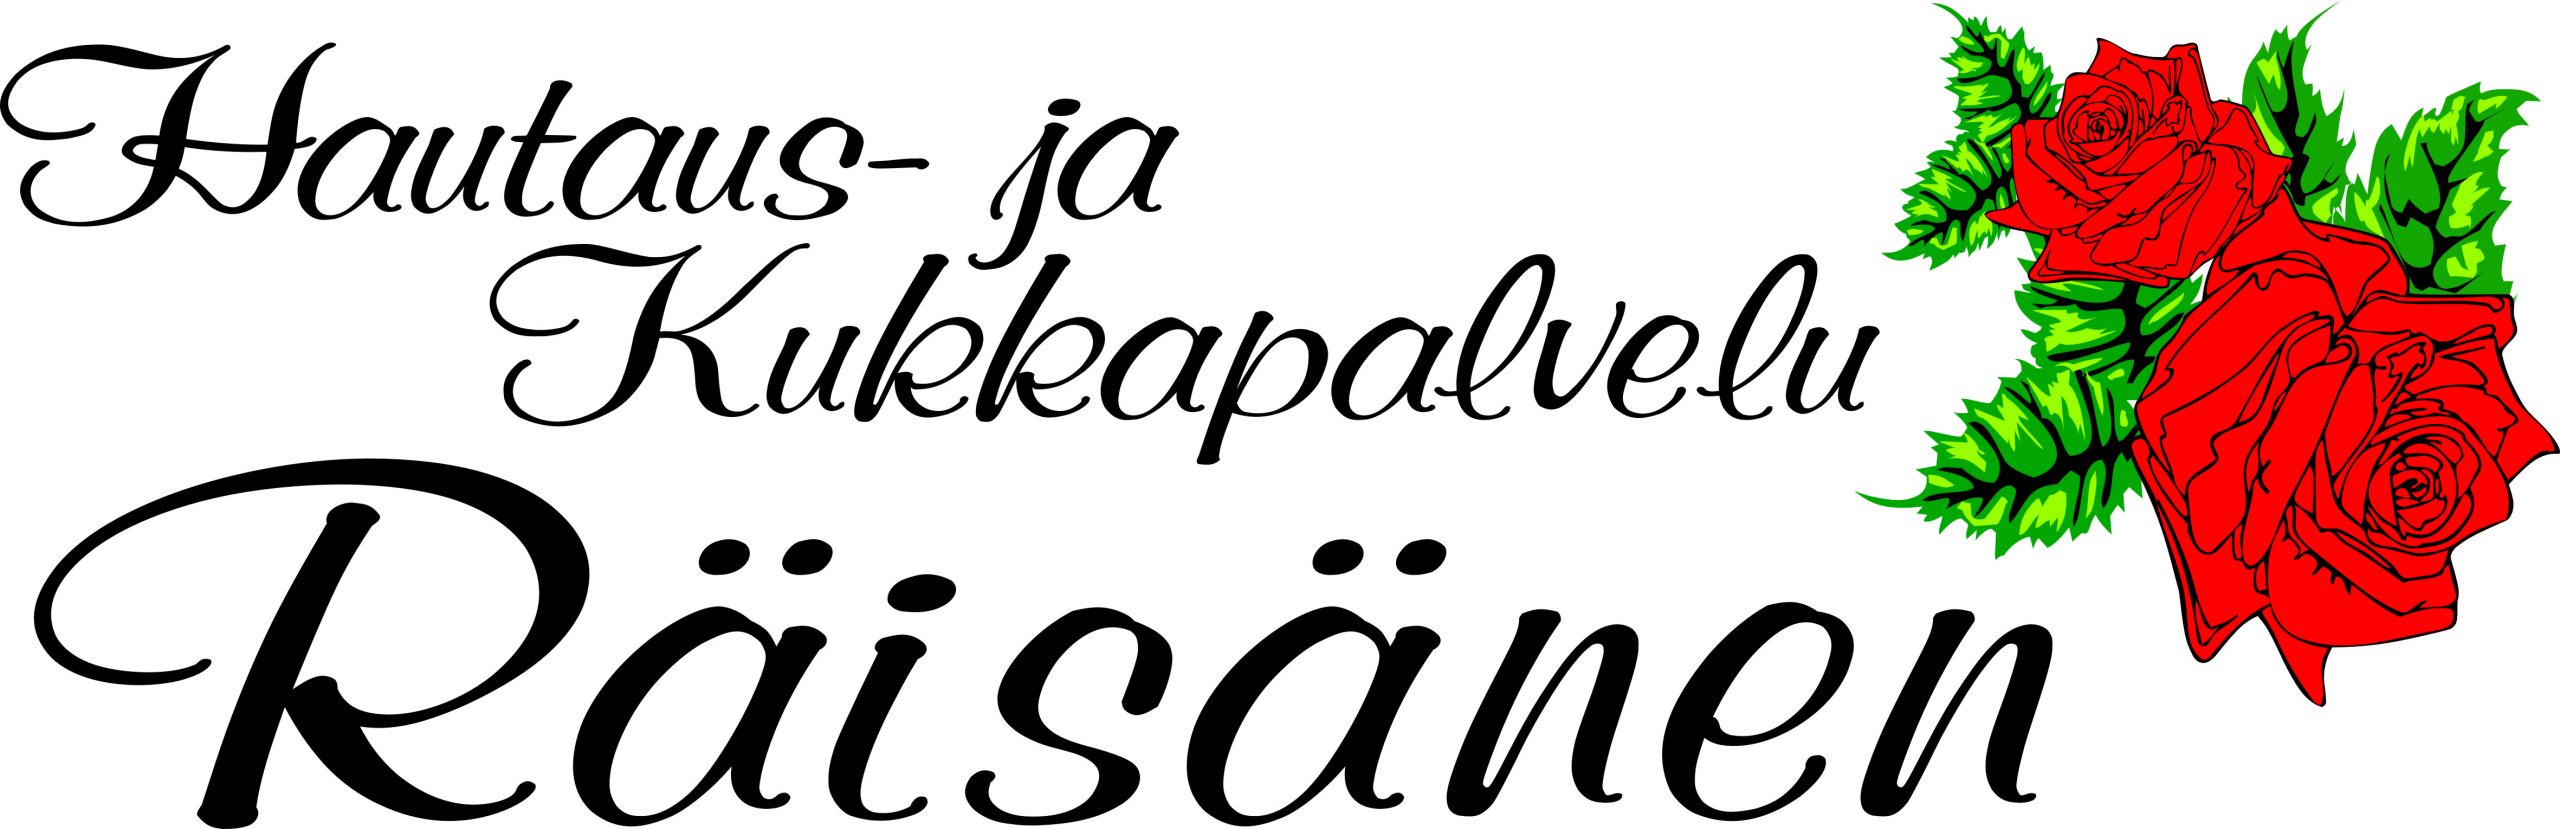 Hautaus-ja-Kukkapalvelu-Räisänen-logo59591-scaled